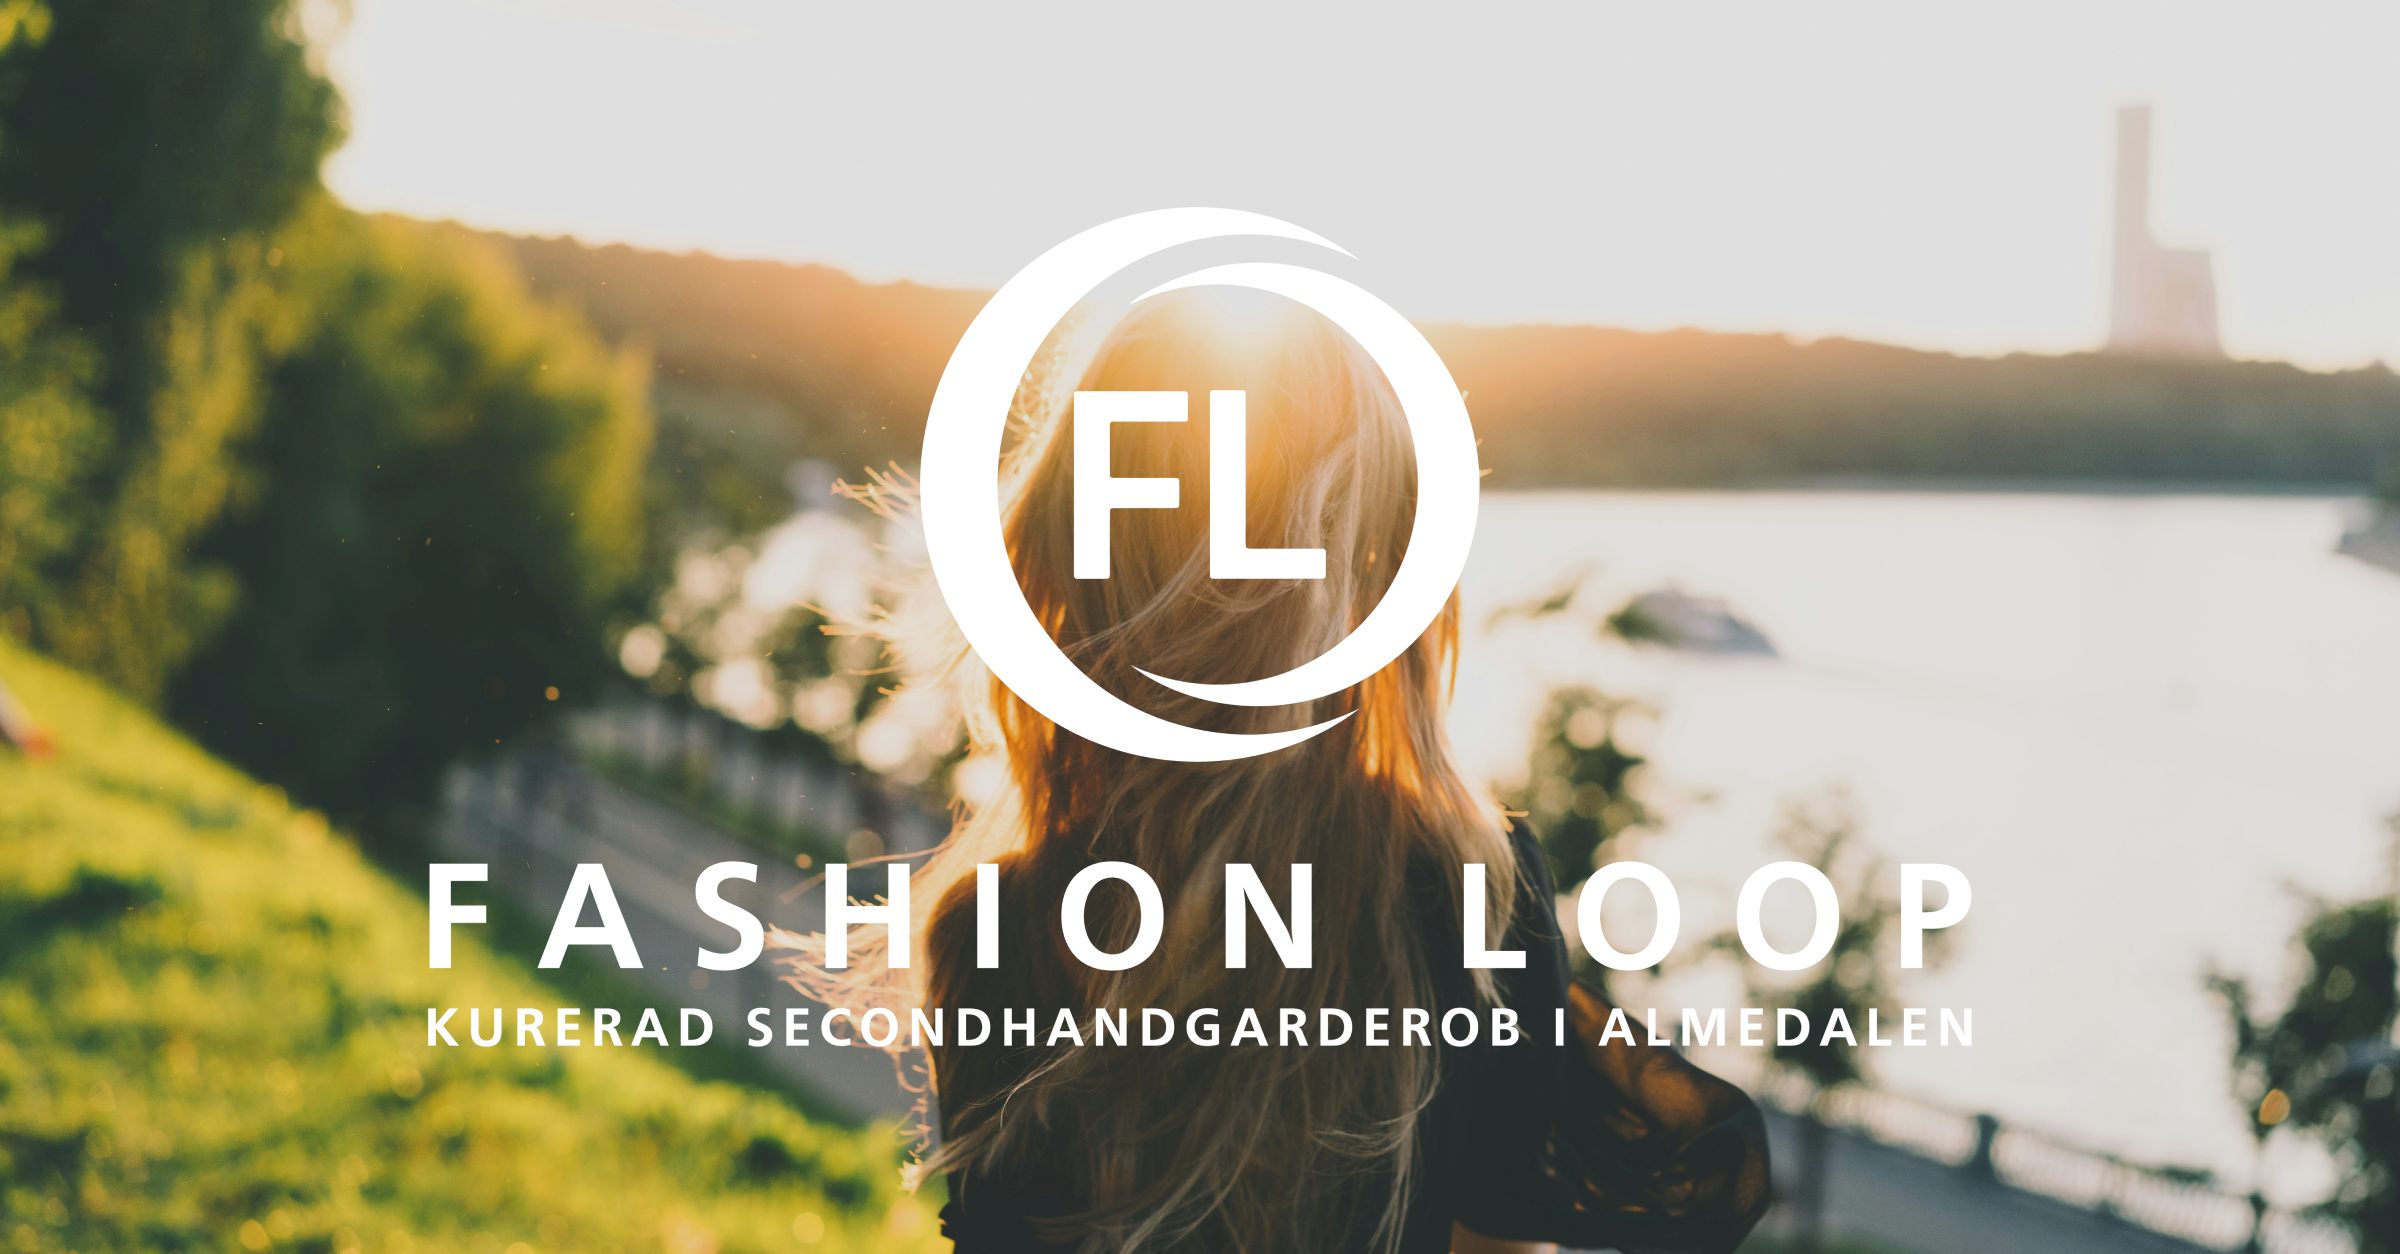 Köp inget nytt, låna från Fashion Loop Almedalen – en kurerad secondhandgarderob